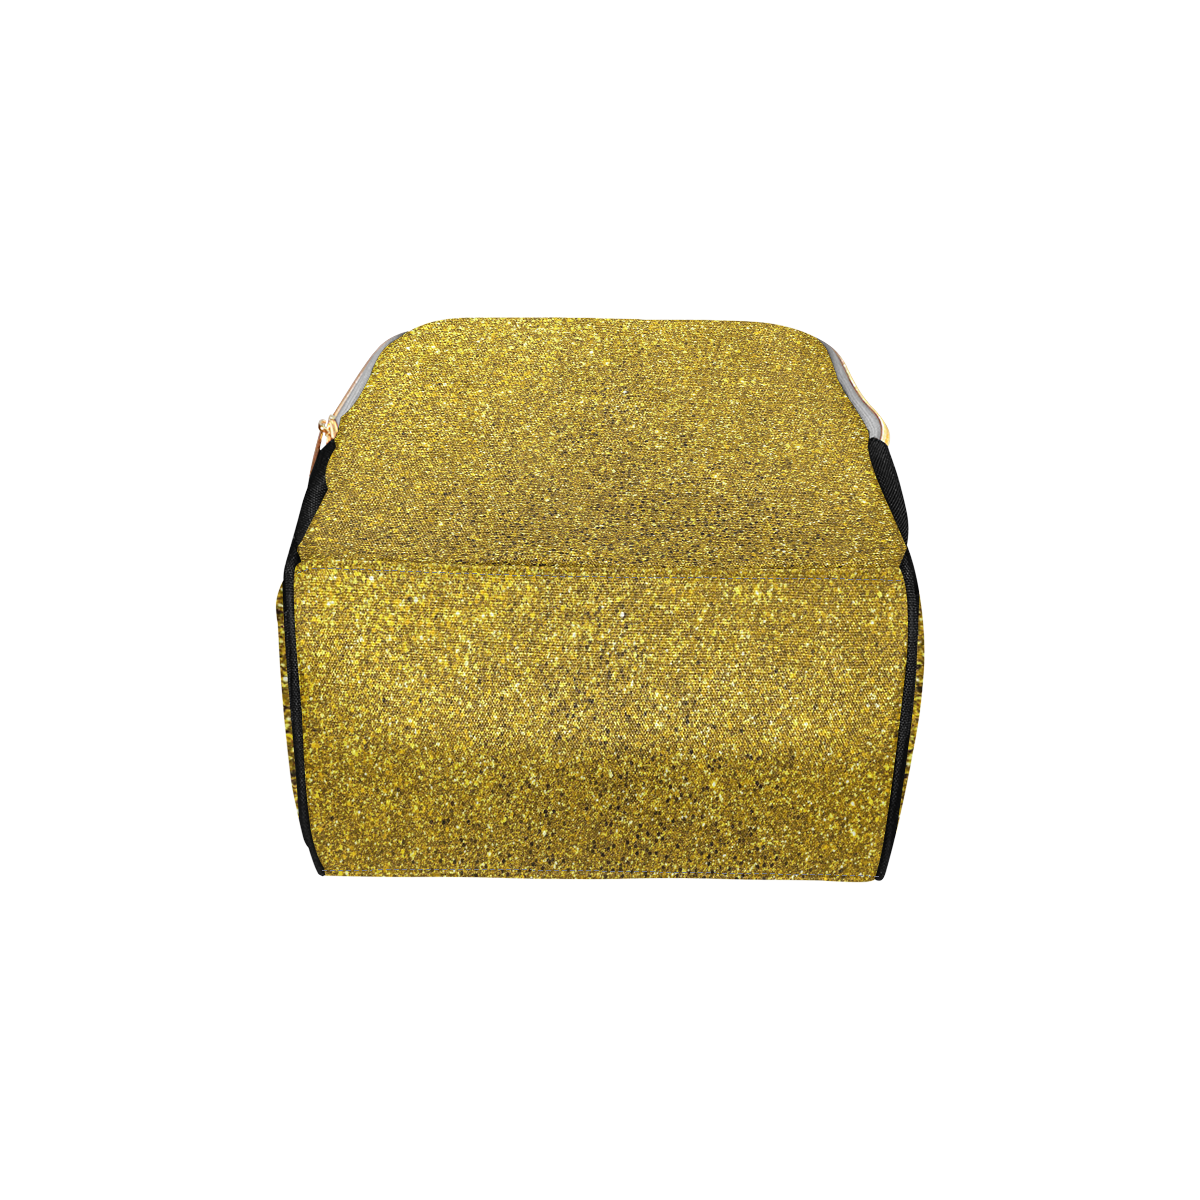 Gold Glitter Multi-Function Diaper Backpack/Diaper Bag (Model 1688)